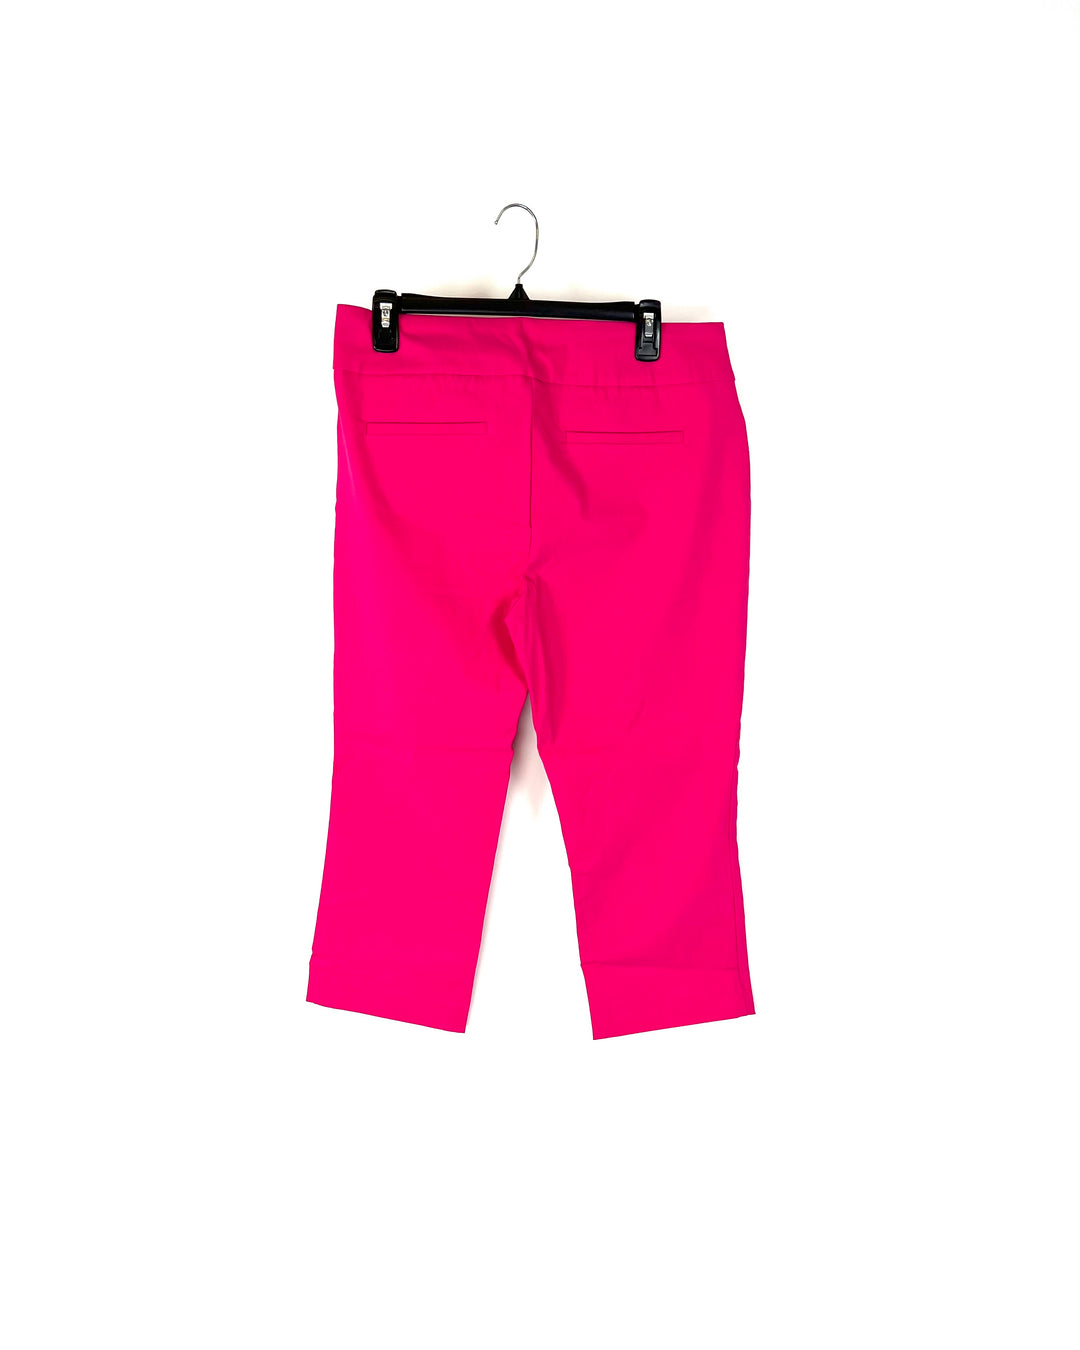 Pink Capri Pants - Size 12/14